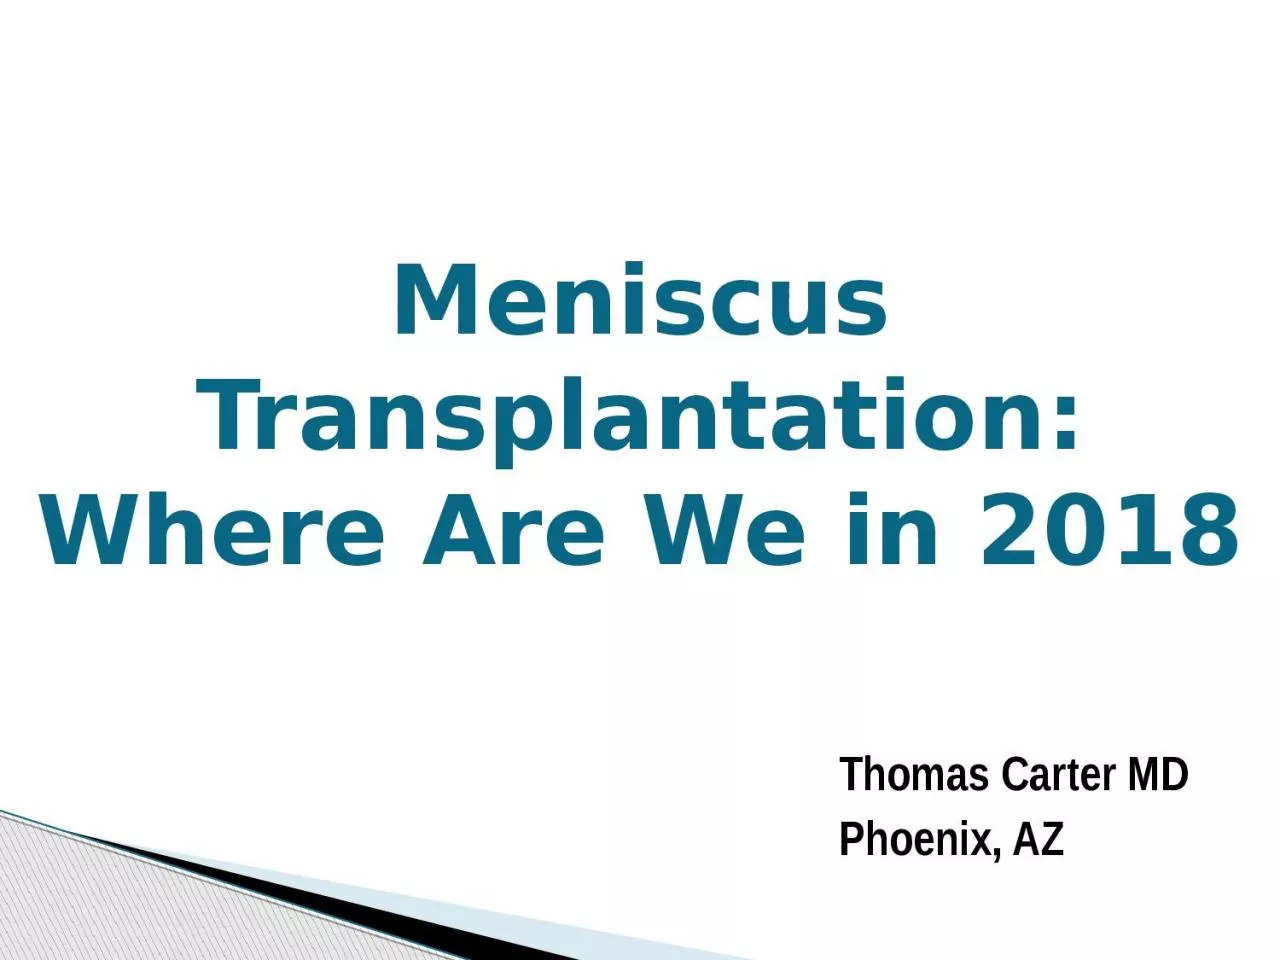 Meniscus Transplantation: